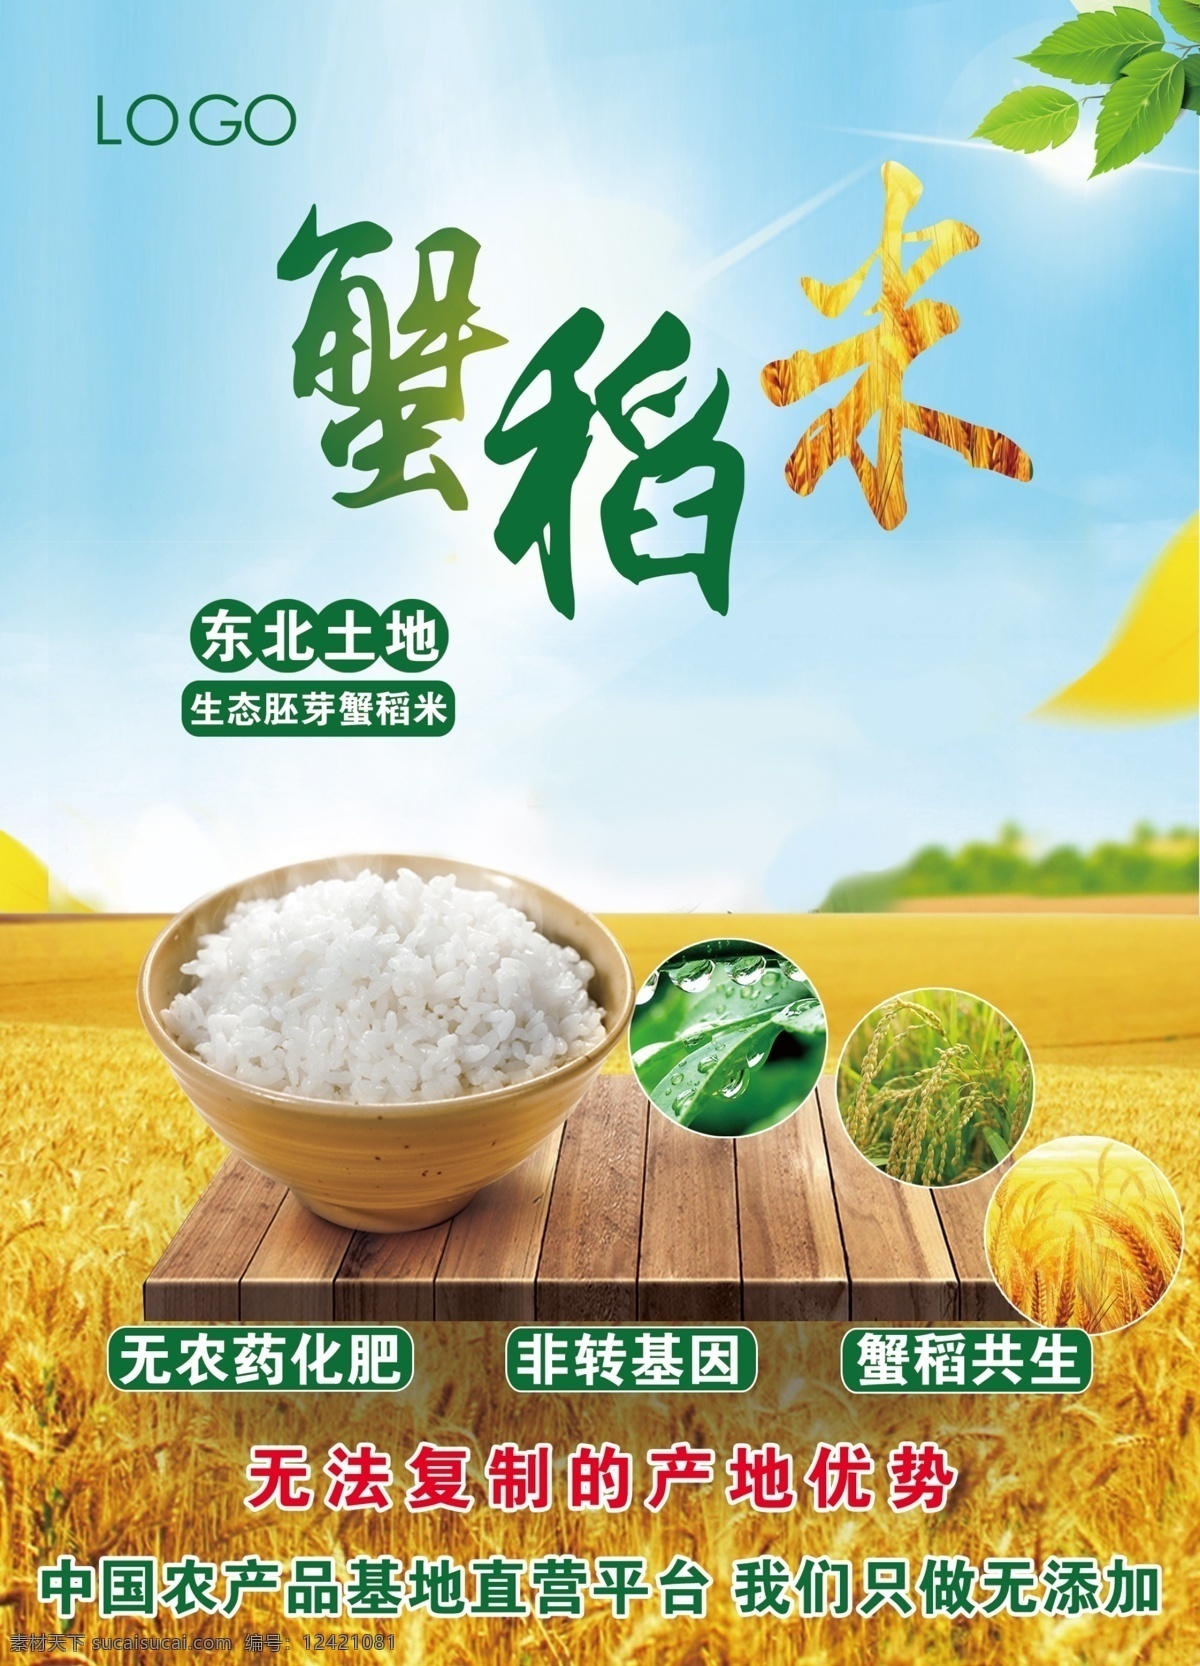 蟹稻米 稻米 蟹稻共生 水稻 米饭 水稻宣传 蓝天水稻 太阳 分层